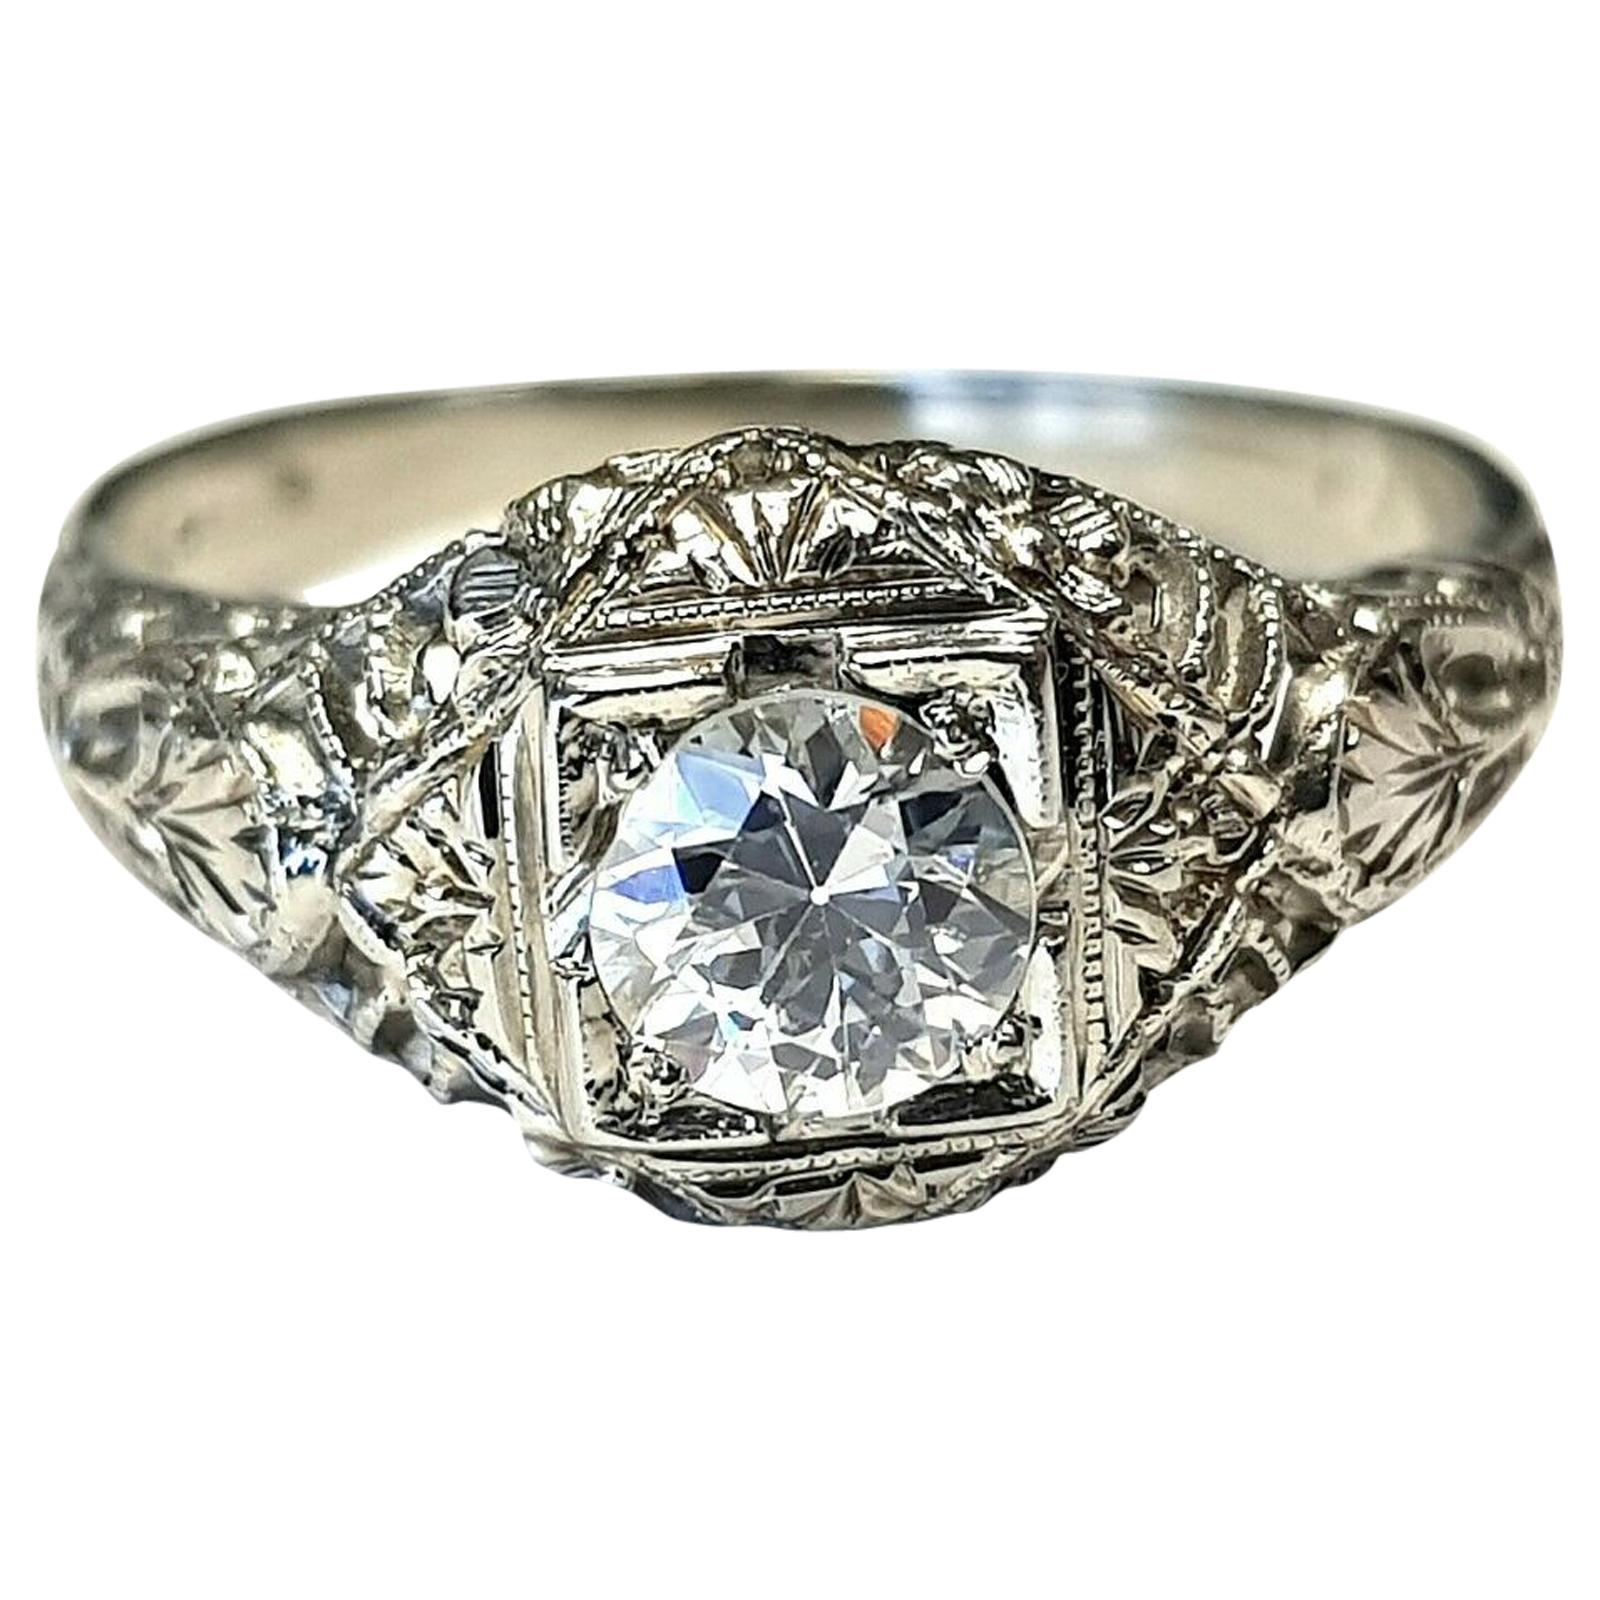 Art Deco Style 18 Karat White Gold Ring with G/SI1 Round Diamond